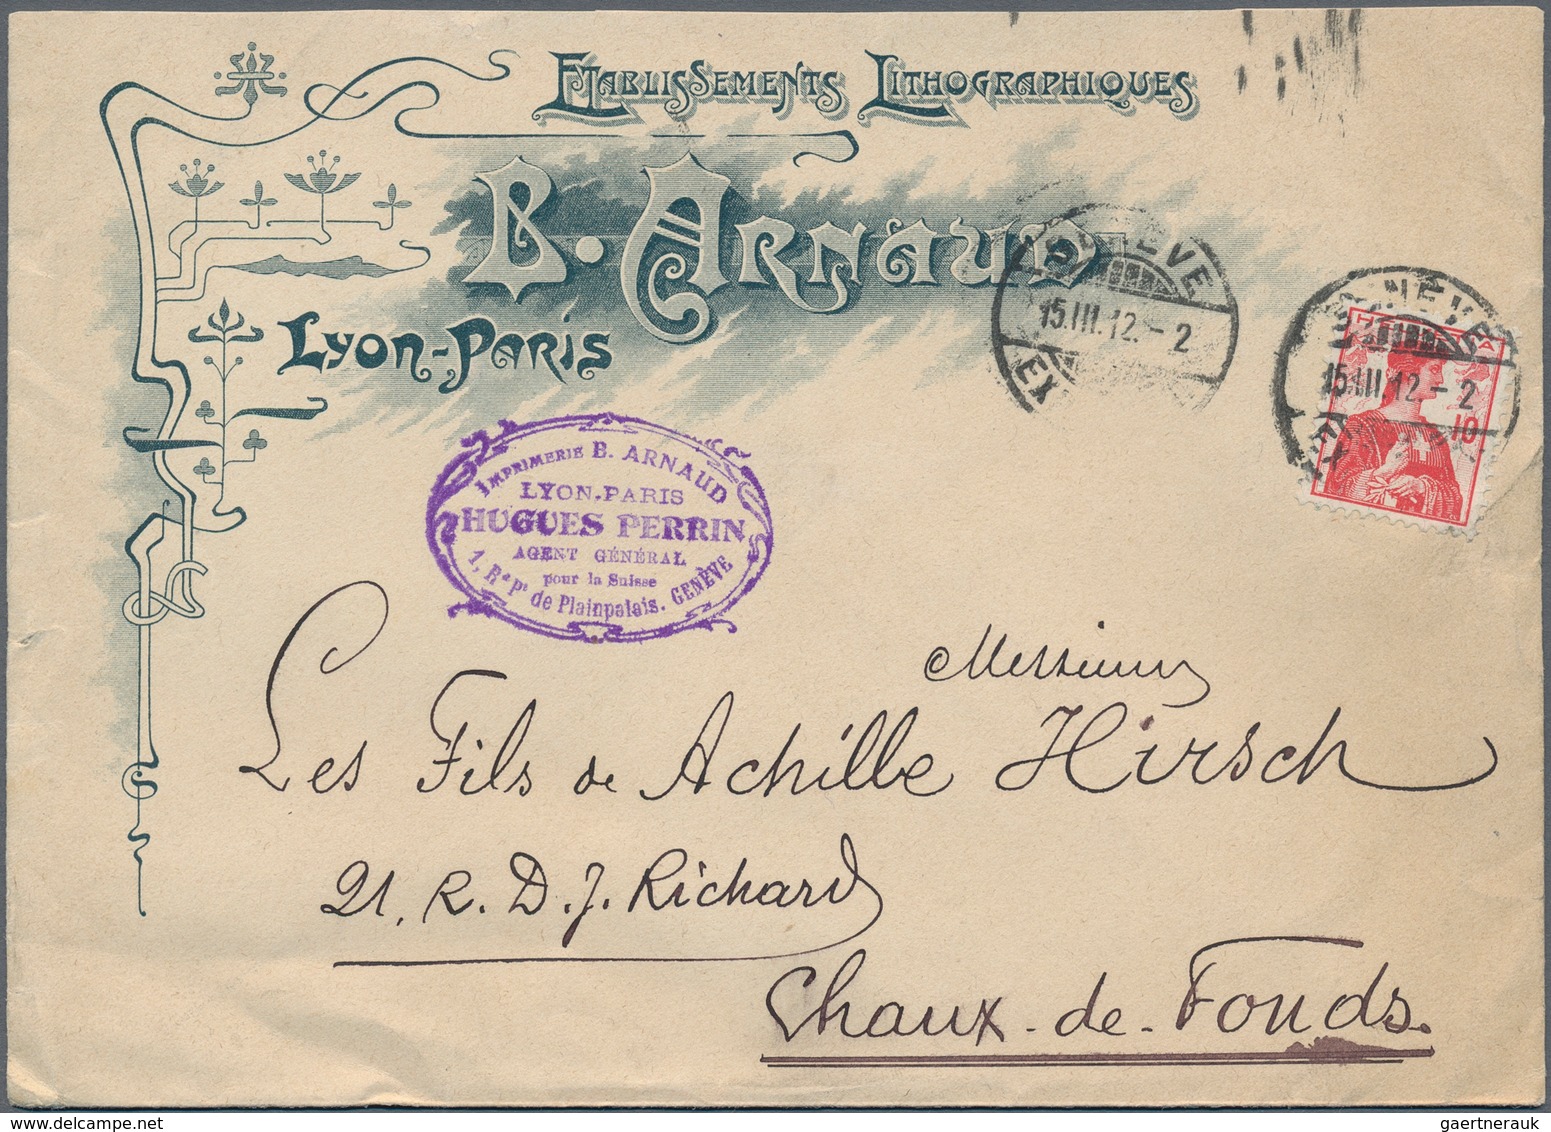 Nachlässe: 1900/1990 ca., 6 Briefauswahlhefte mit überwiegend deutschen Briefen und Ganzsachen mit H